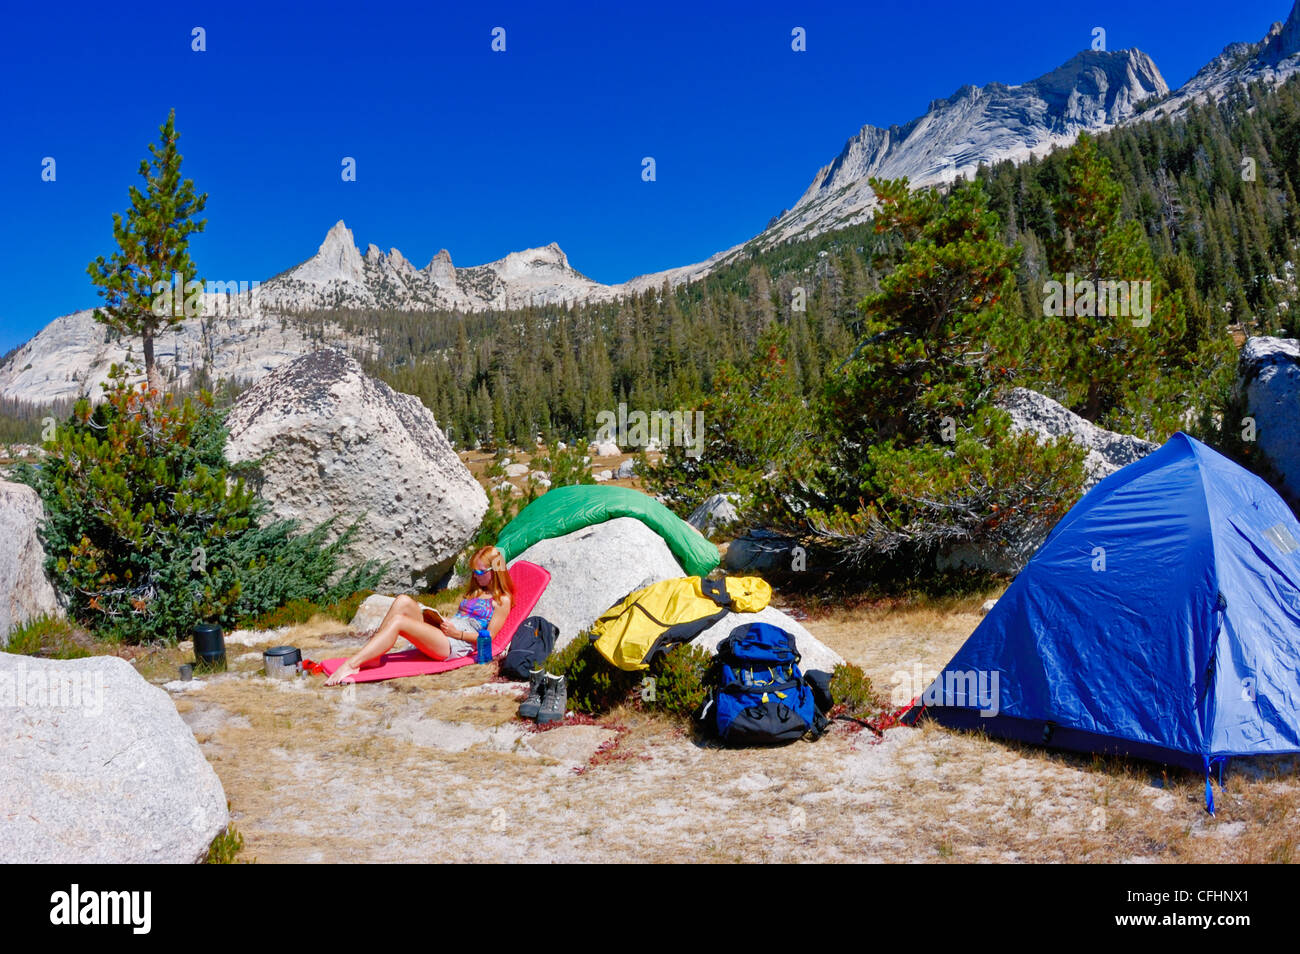 Frau entspannen im Camp unter Echo Gipfeln und Matthes Crest (backpacking Ausrüstung sichtbar), Yosemite-Nationalpark, Kalifornien Stockfoto